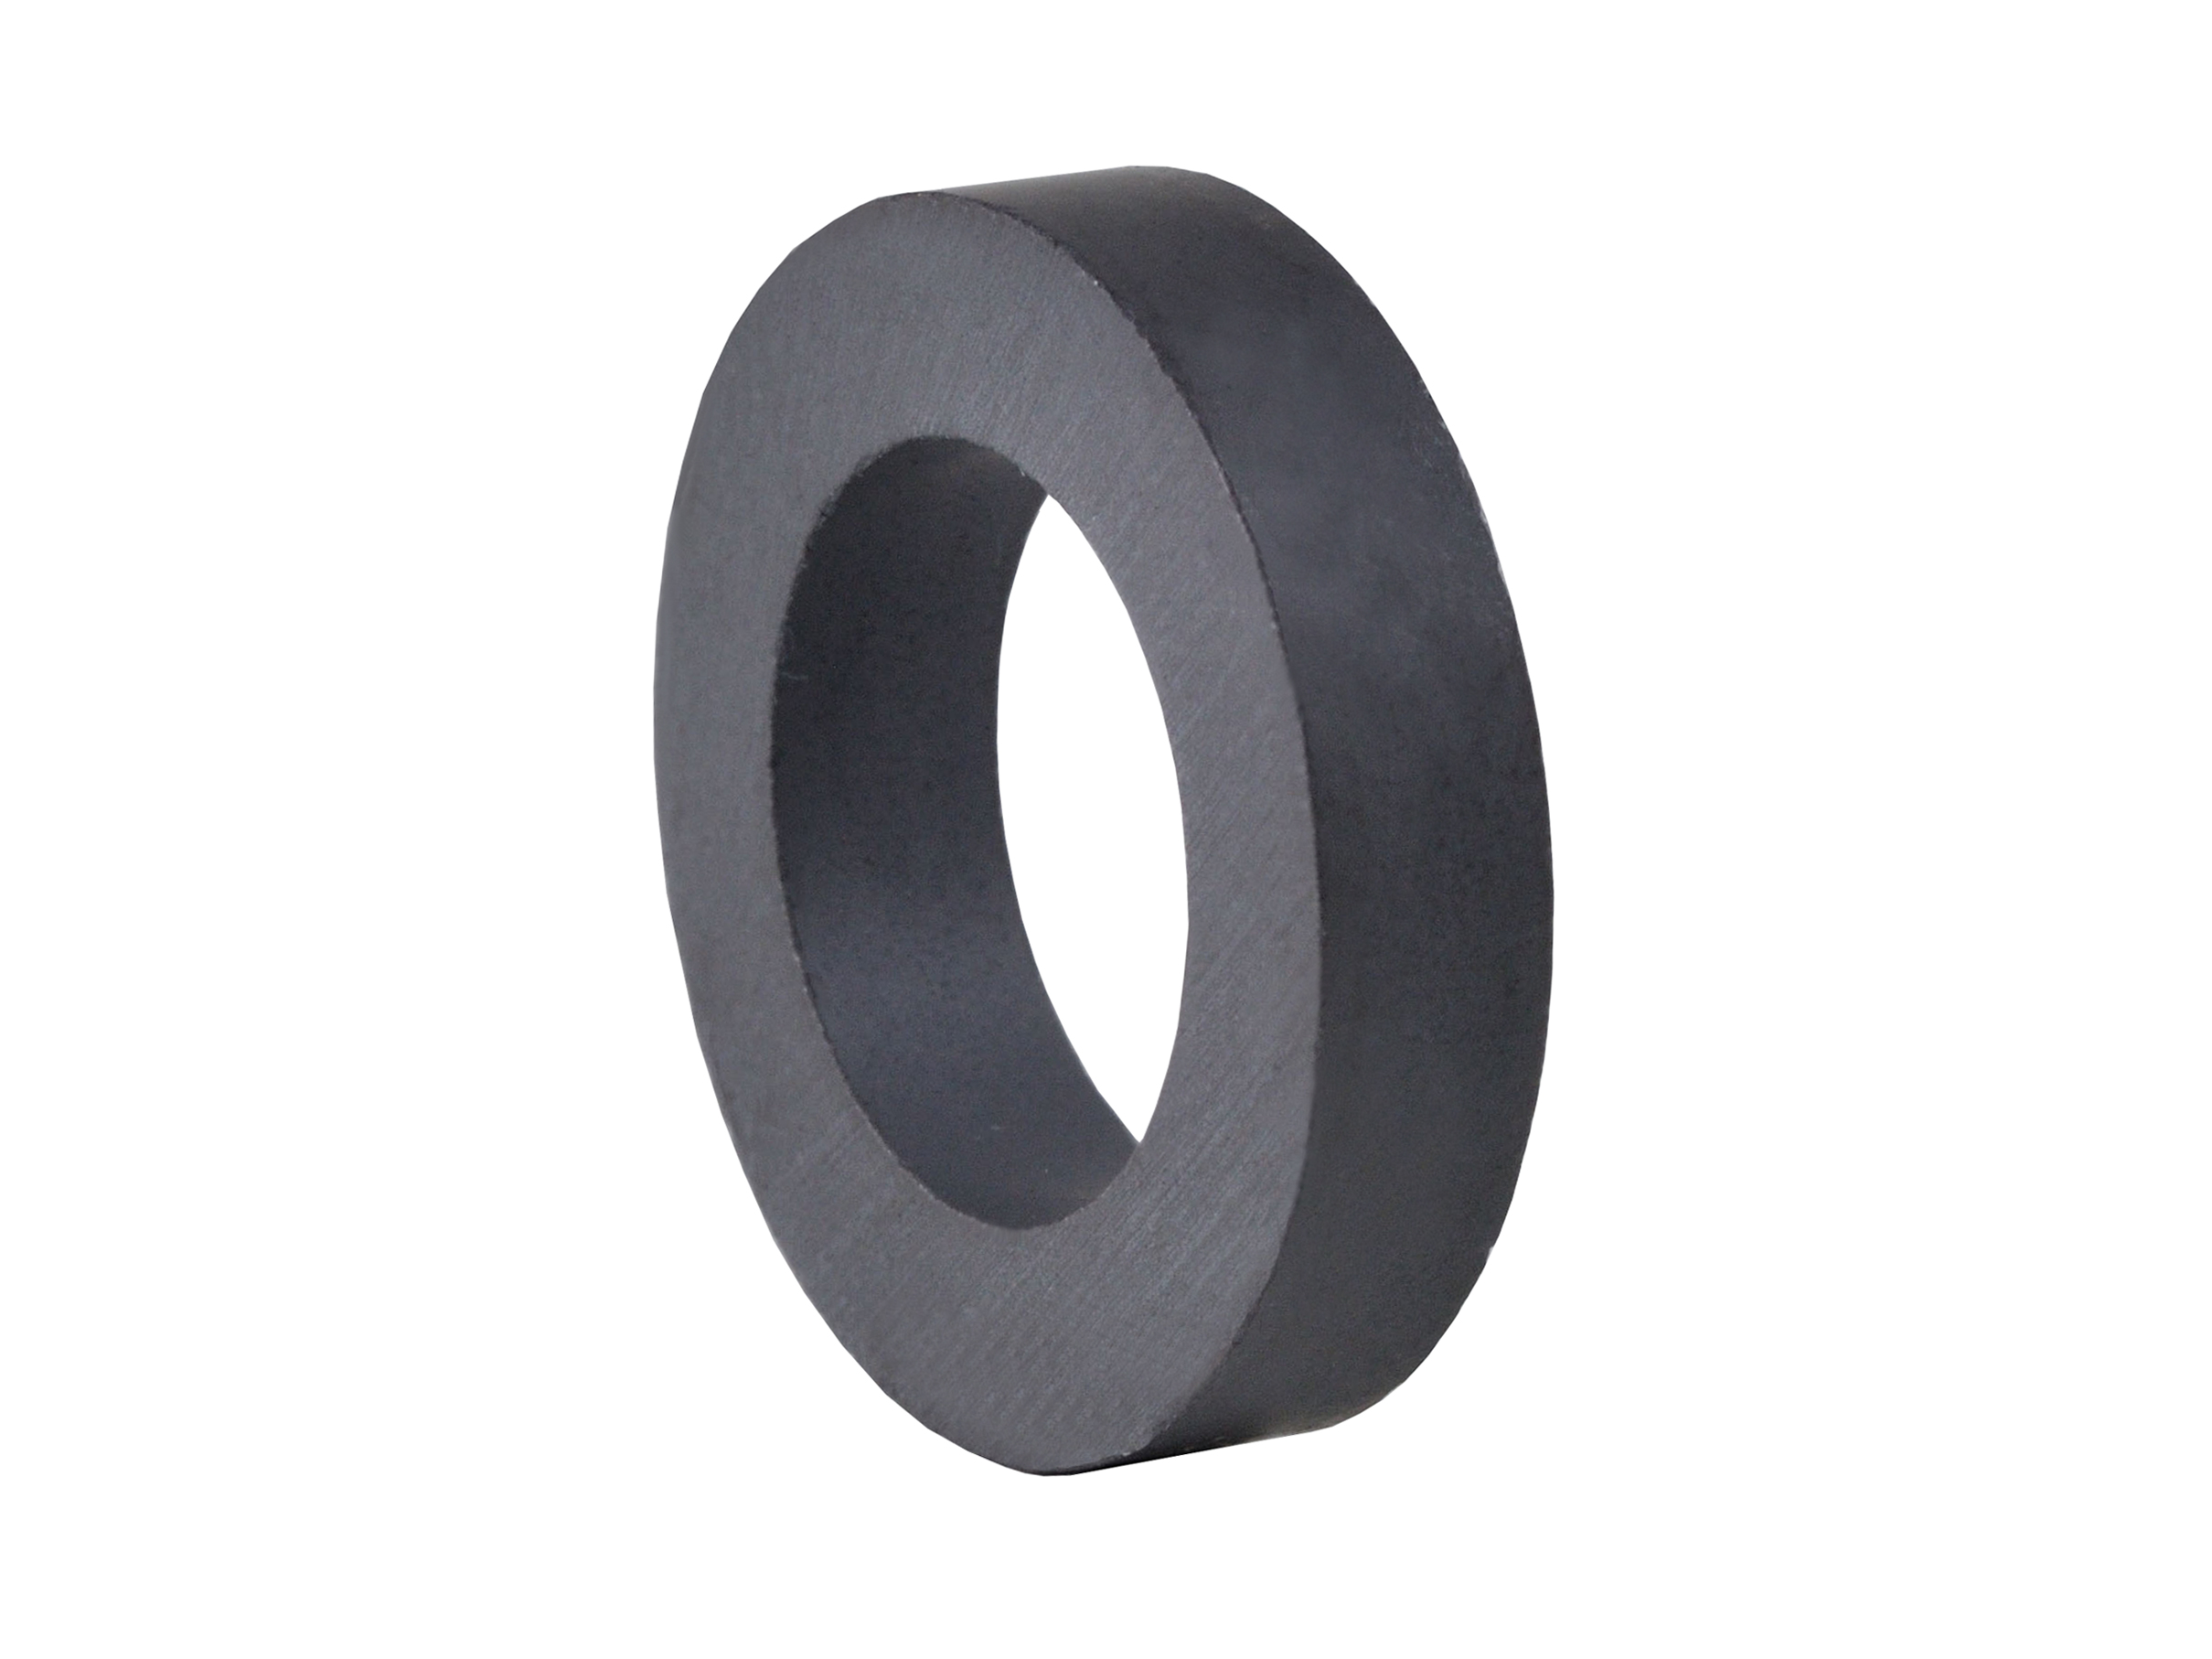 Ring‑Shaped Ferrite Magnet (FRR14) 